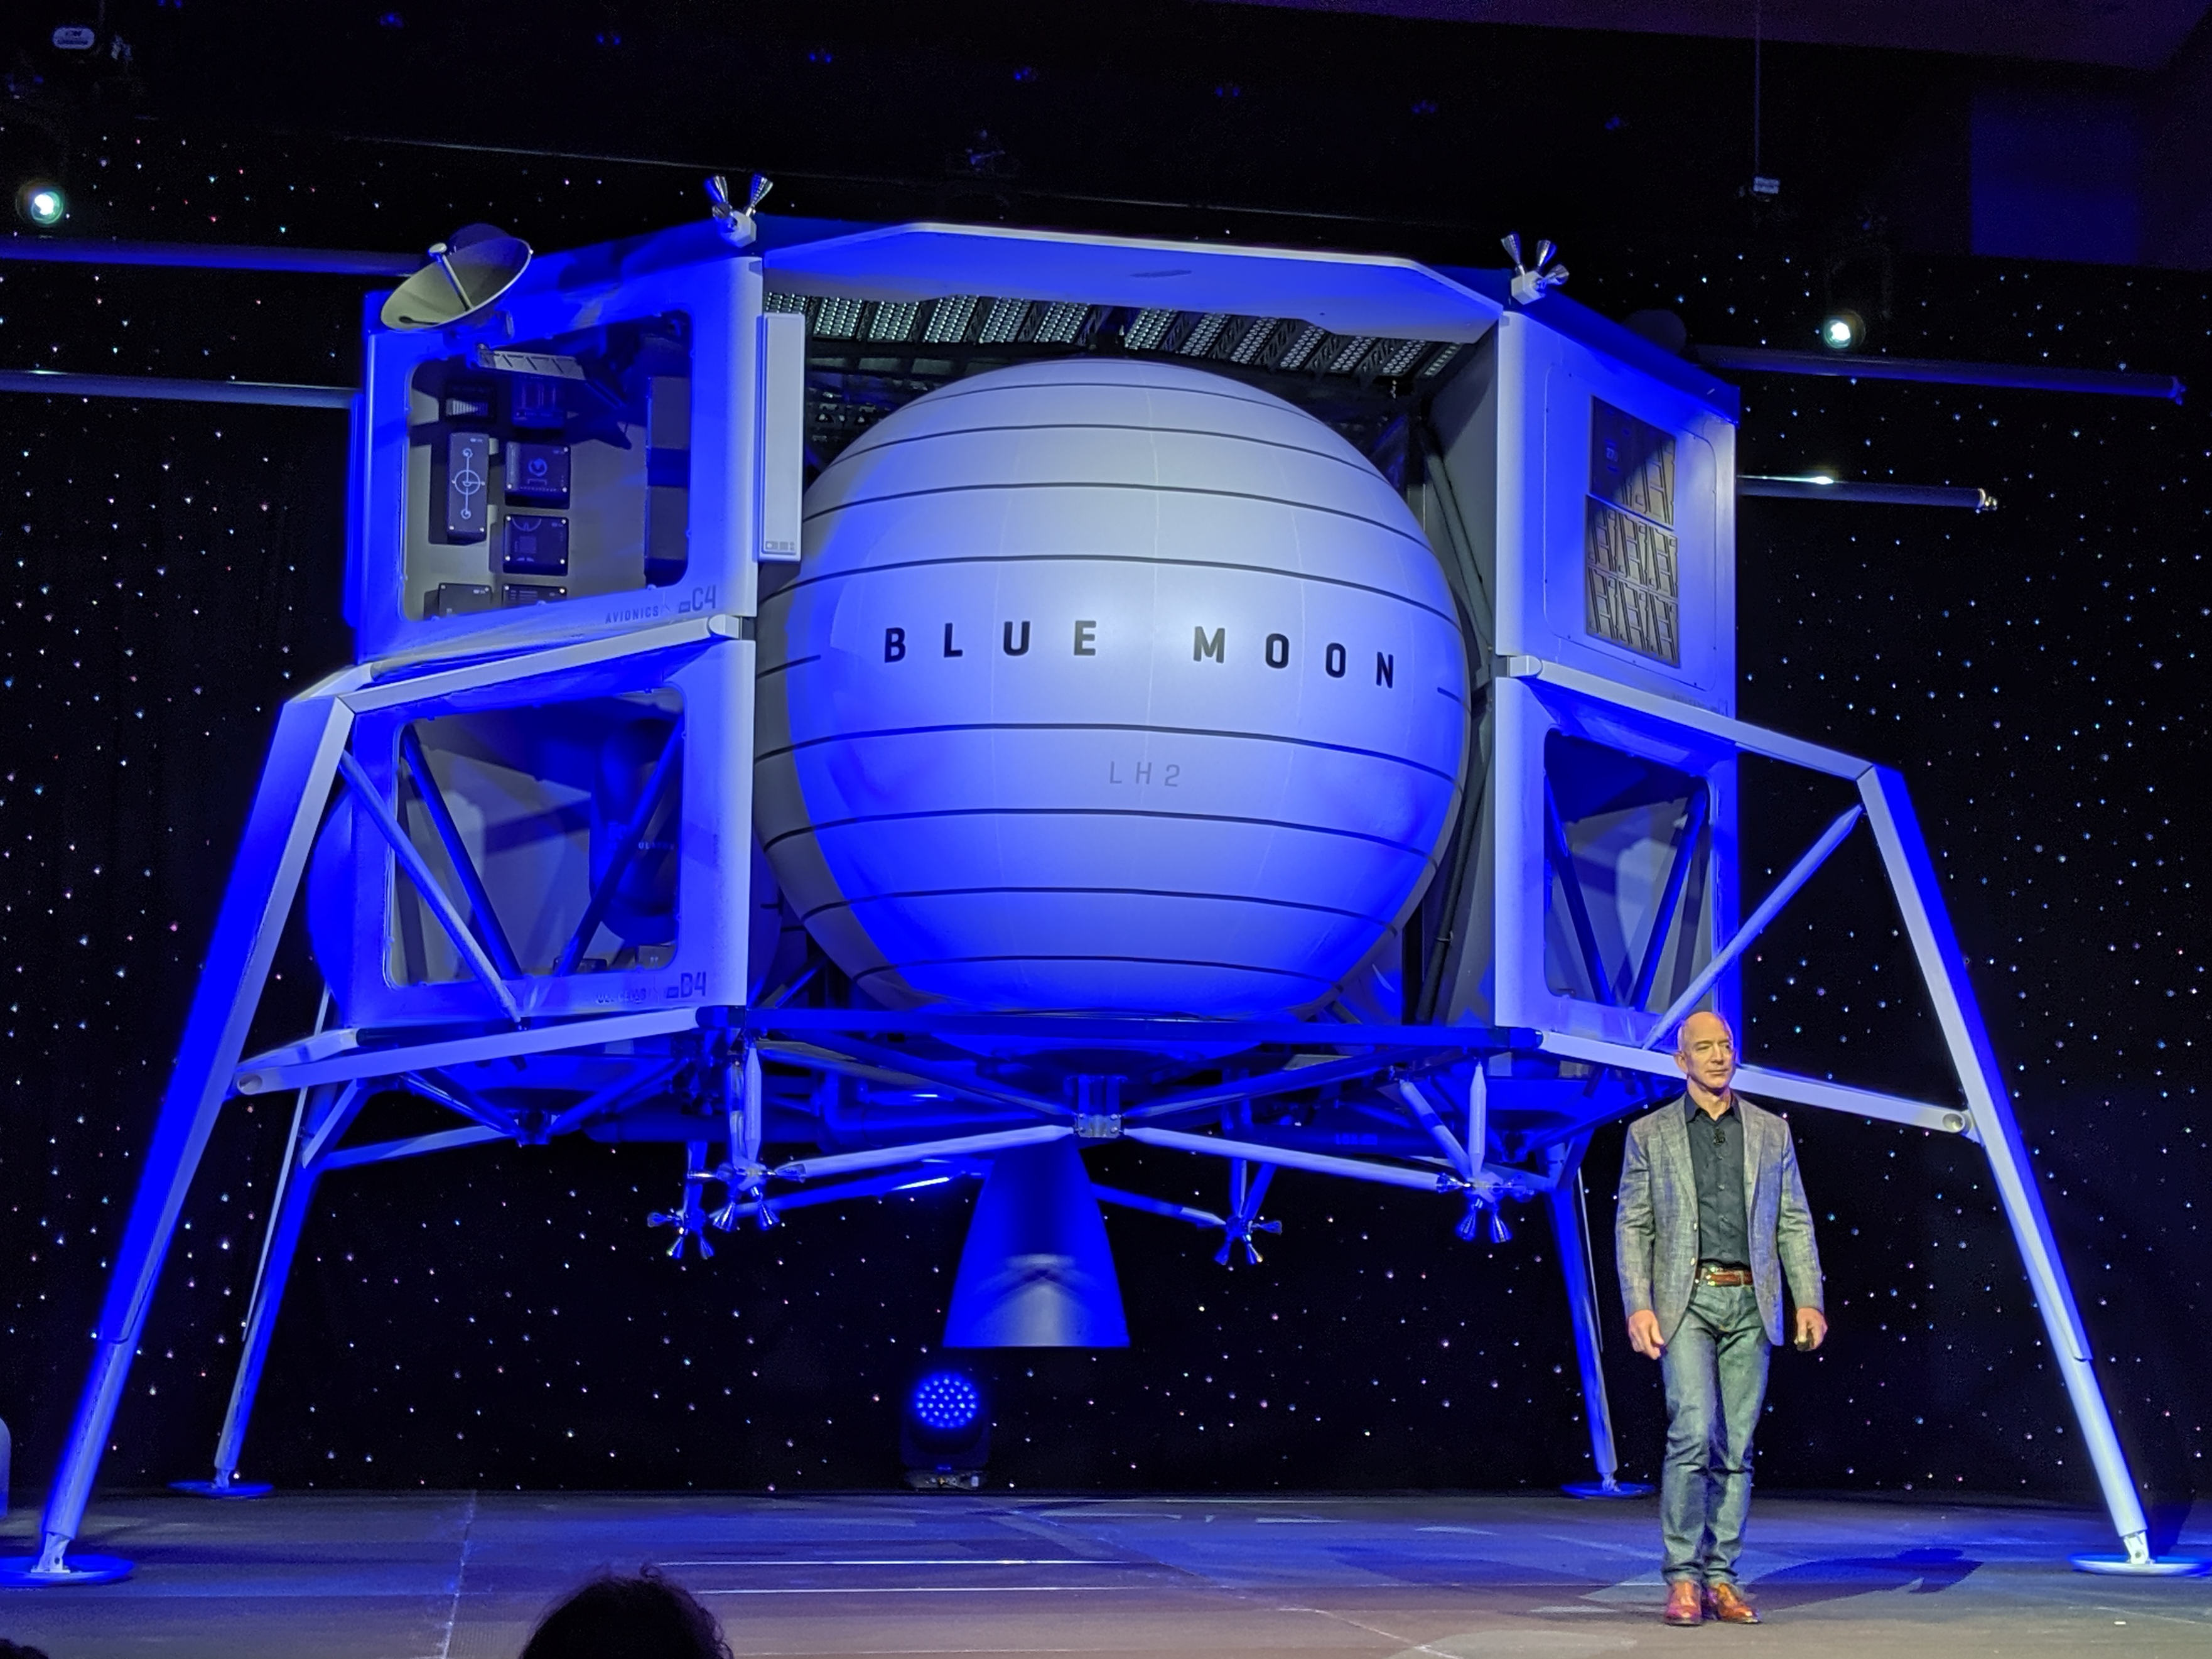 De maanlander die Jeff Bezos in mei 2019 presenteerde met zijn bedrijf Blue Origin.